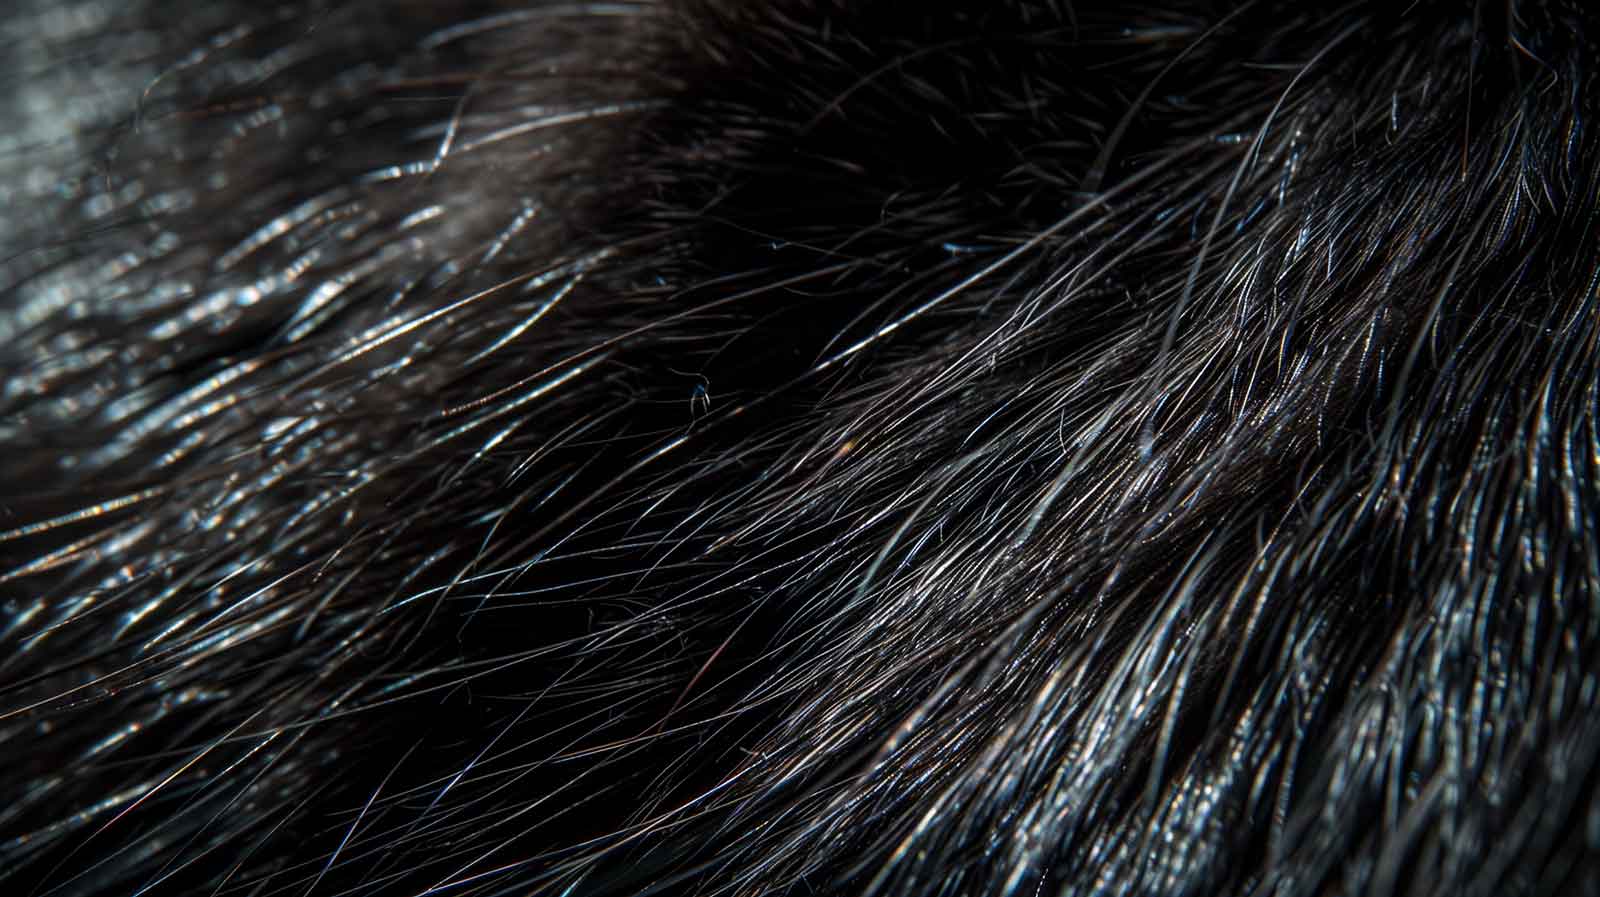 Ein Makrofoto in Nahaufnahme, das sich auf die Textur von glänzendem schwarzen Fell konzentriert. Das Bild fängt die komplizierten Details jedes Haares ein, wobei das Licht von der glatten, glatten Oberfläche einzelner Haare reflektiert wird und Highlights erzeugt, die mit den tieferen Schatten zwischen den Strähnen kontrastieren.